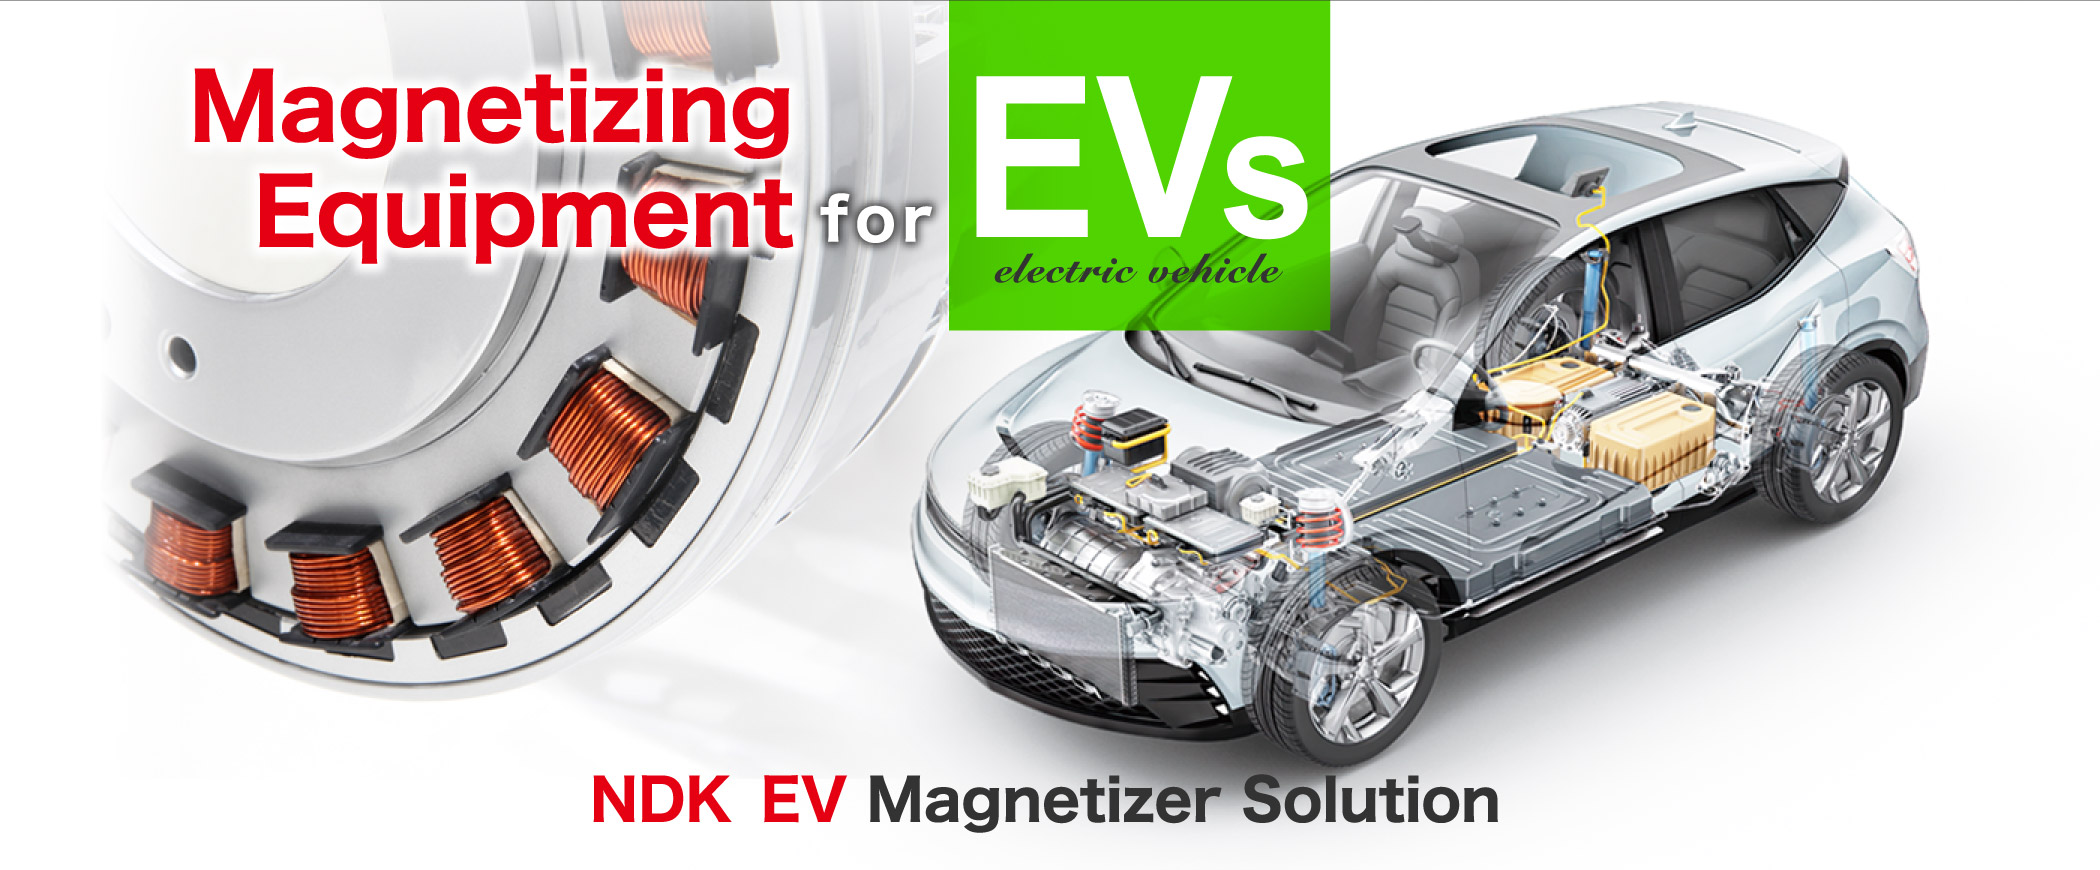 Magnetizing Equipment for EVs